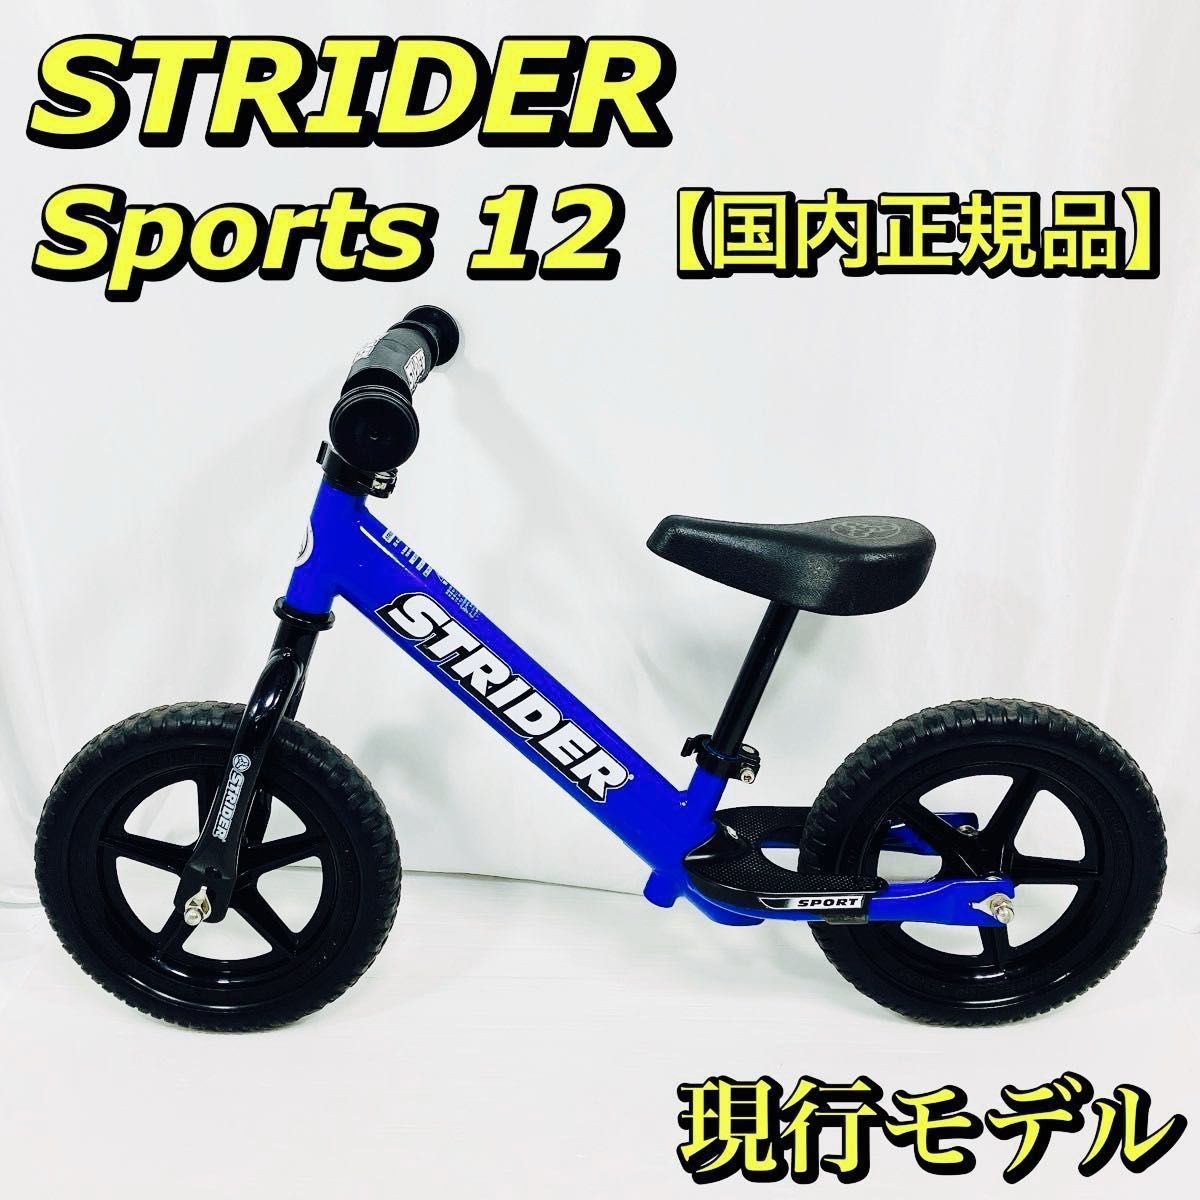 大人気 STRIDER ストライダー スポーツモデル 12インチ ブルー 青